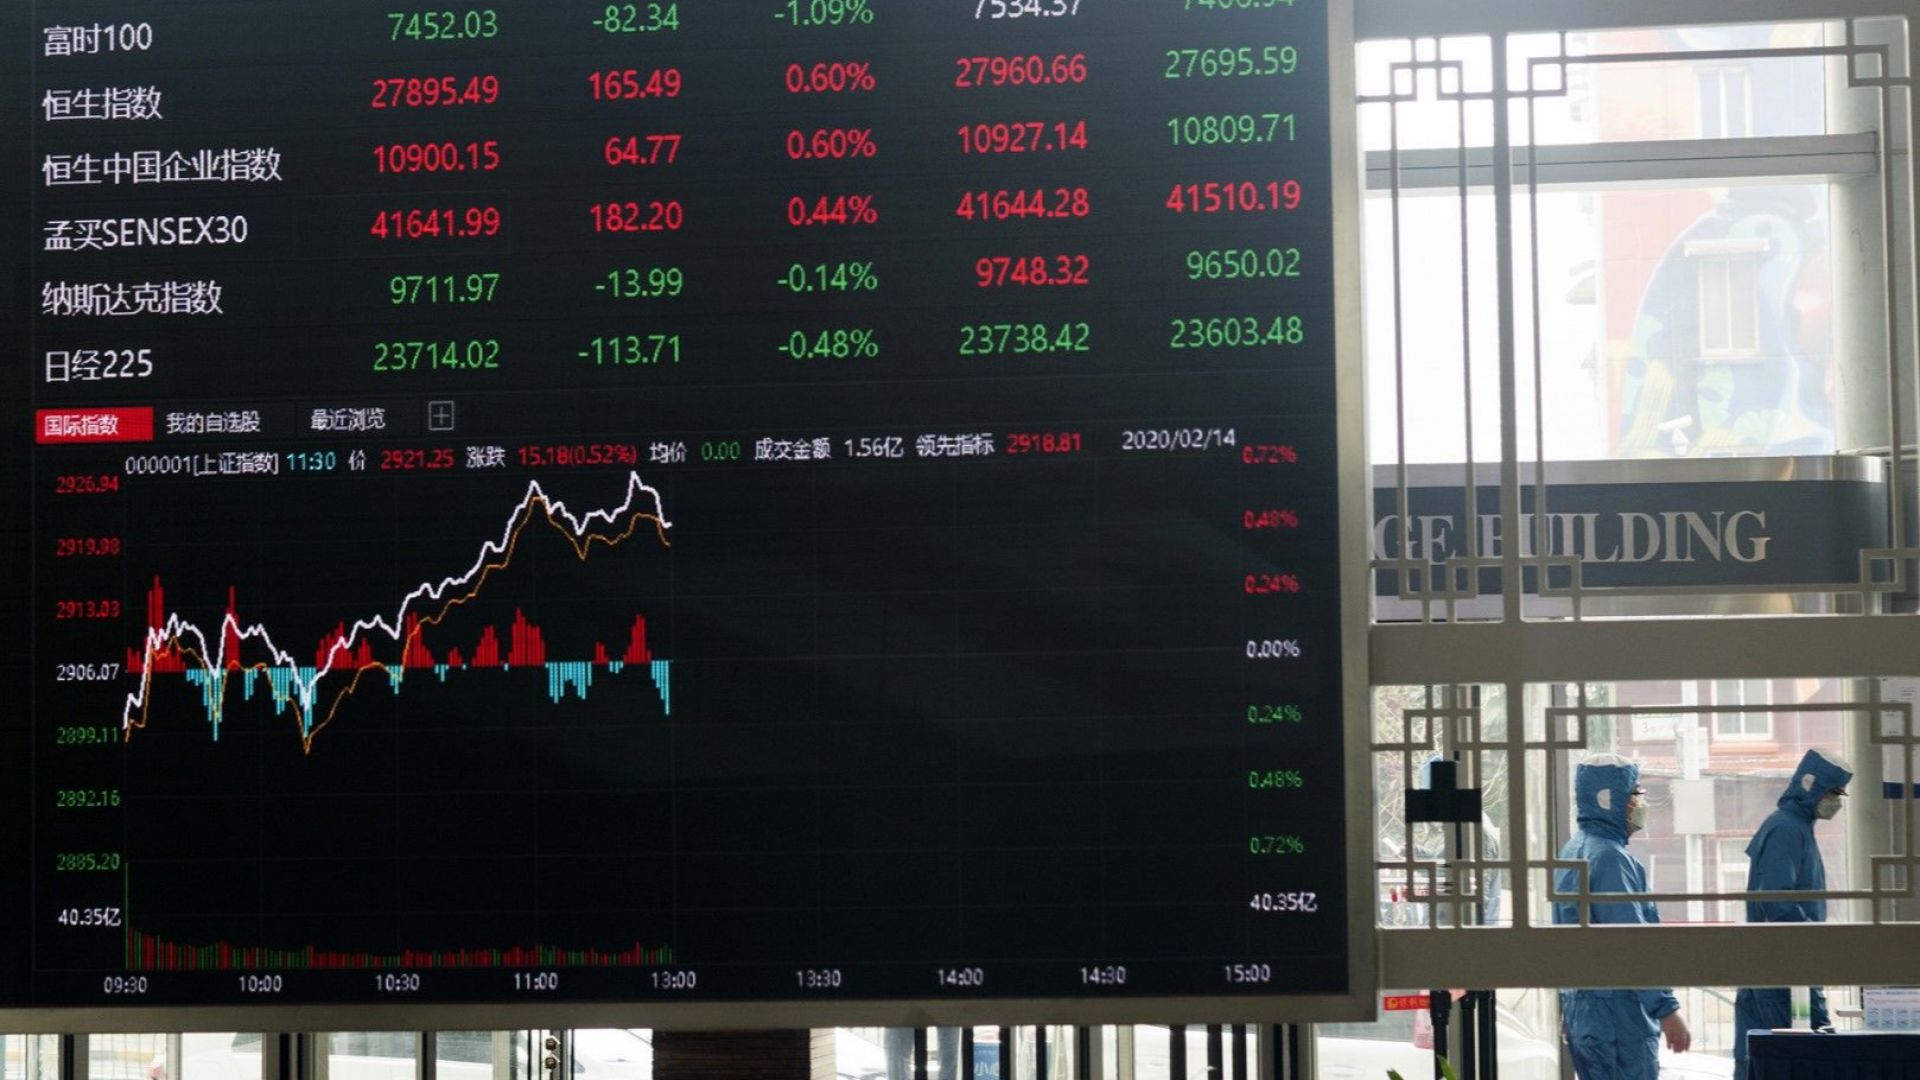 Азиатските фондови борси отбелязаха рязък спад след срива на Уолстрийт